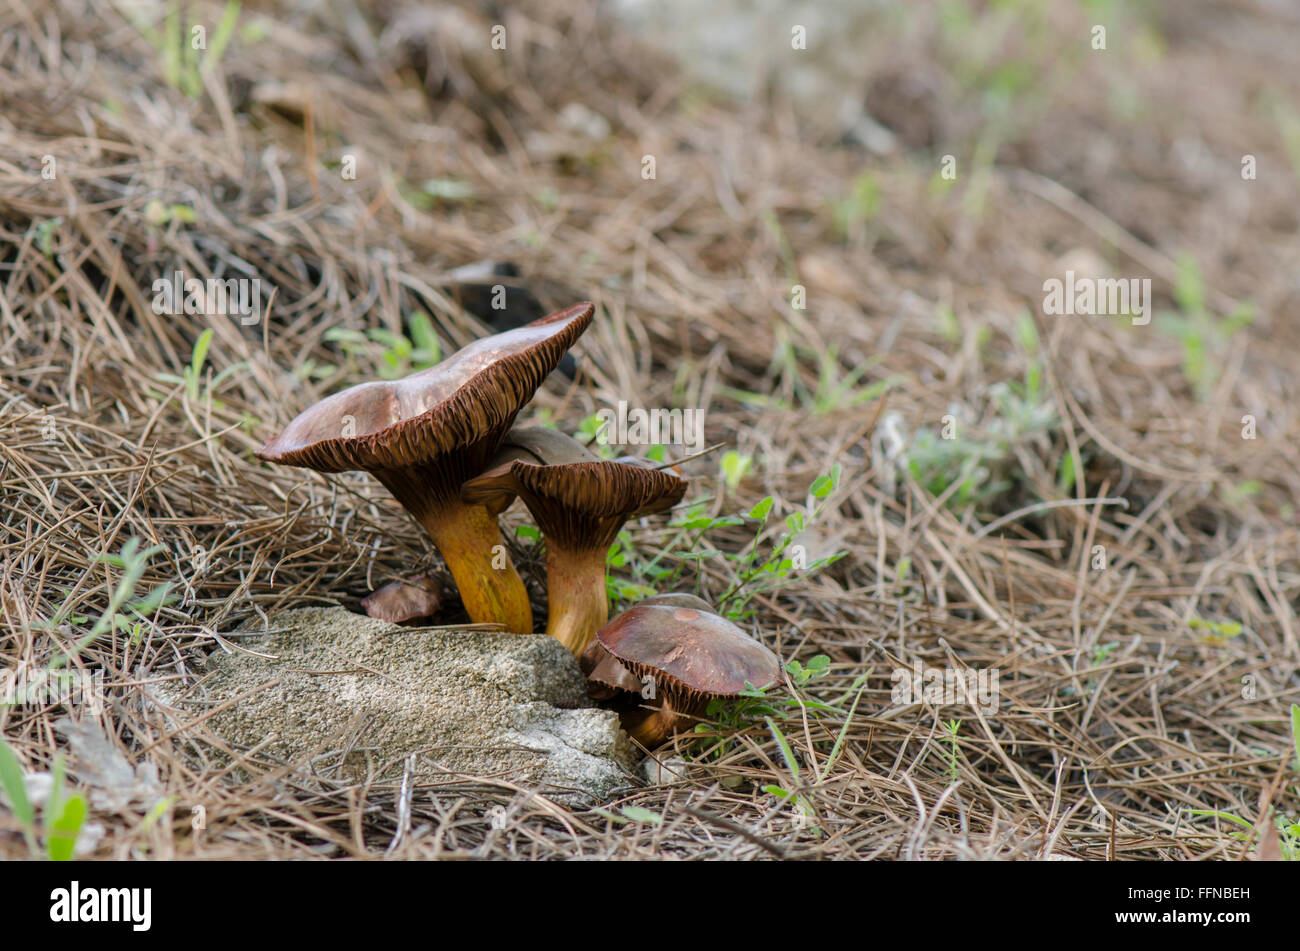 Brown slimecap, Chroogomphus rutilus, copper spike, Wild mushroom growing in forest, Spain. Stock Photo